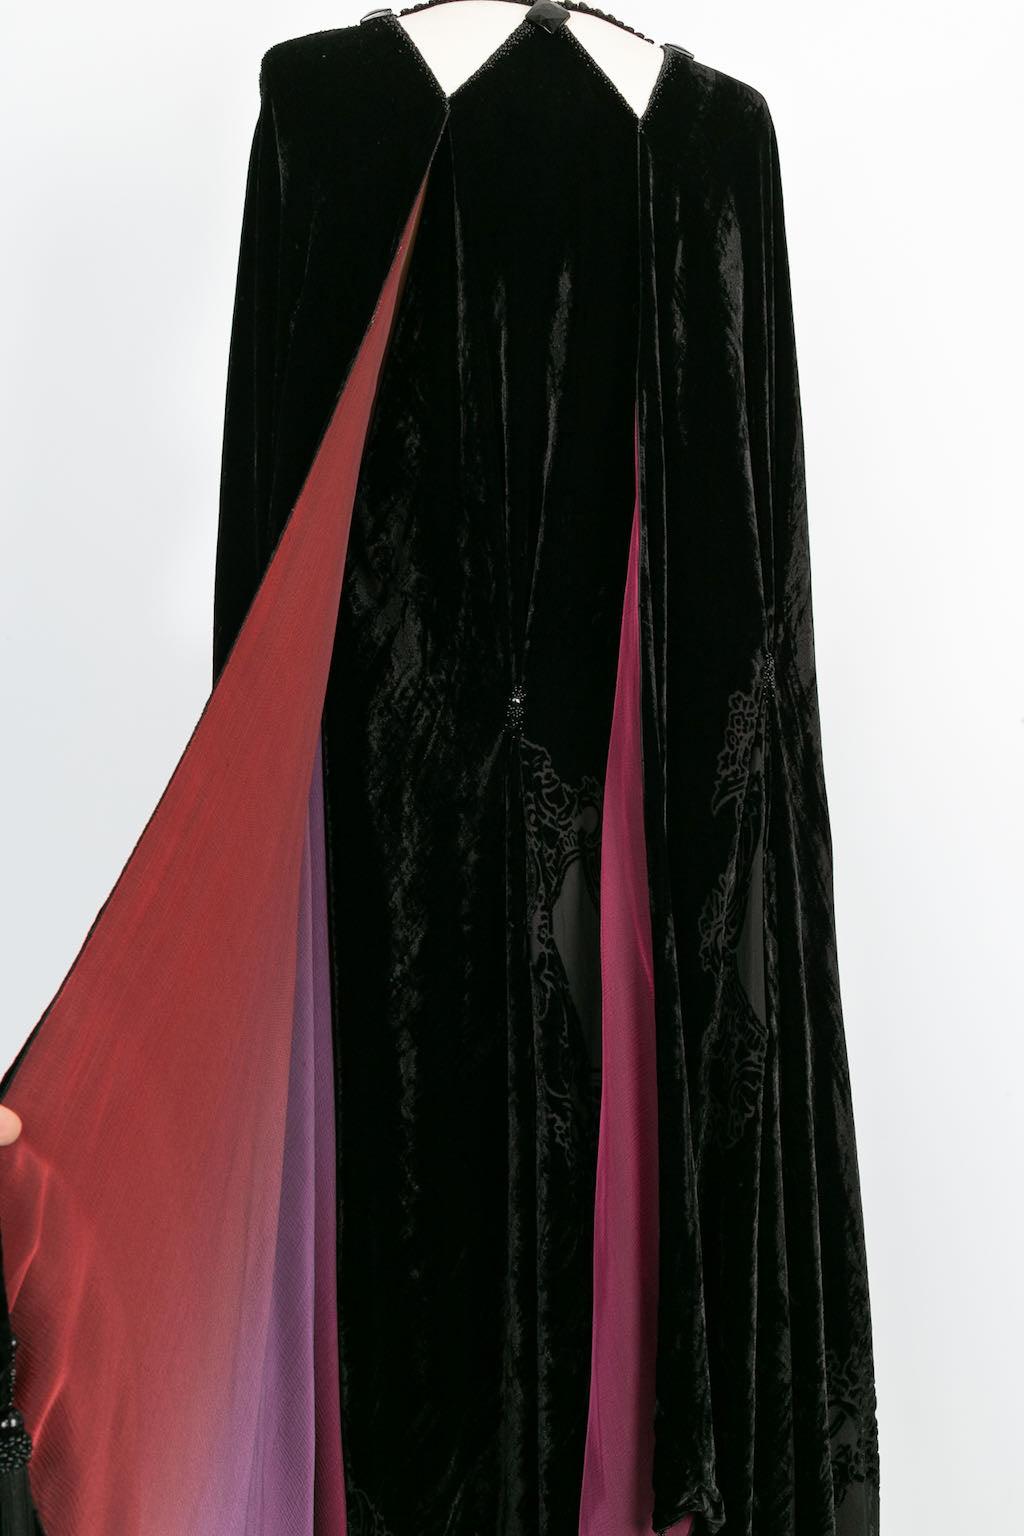 Franck Sorbier Haute Couture Cape in Velvet, 2014/15 For Sale 2